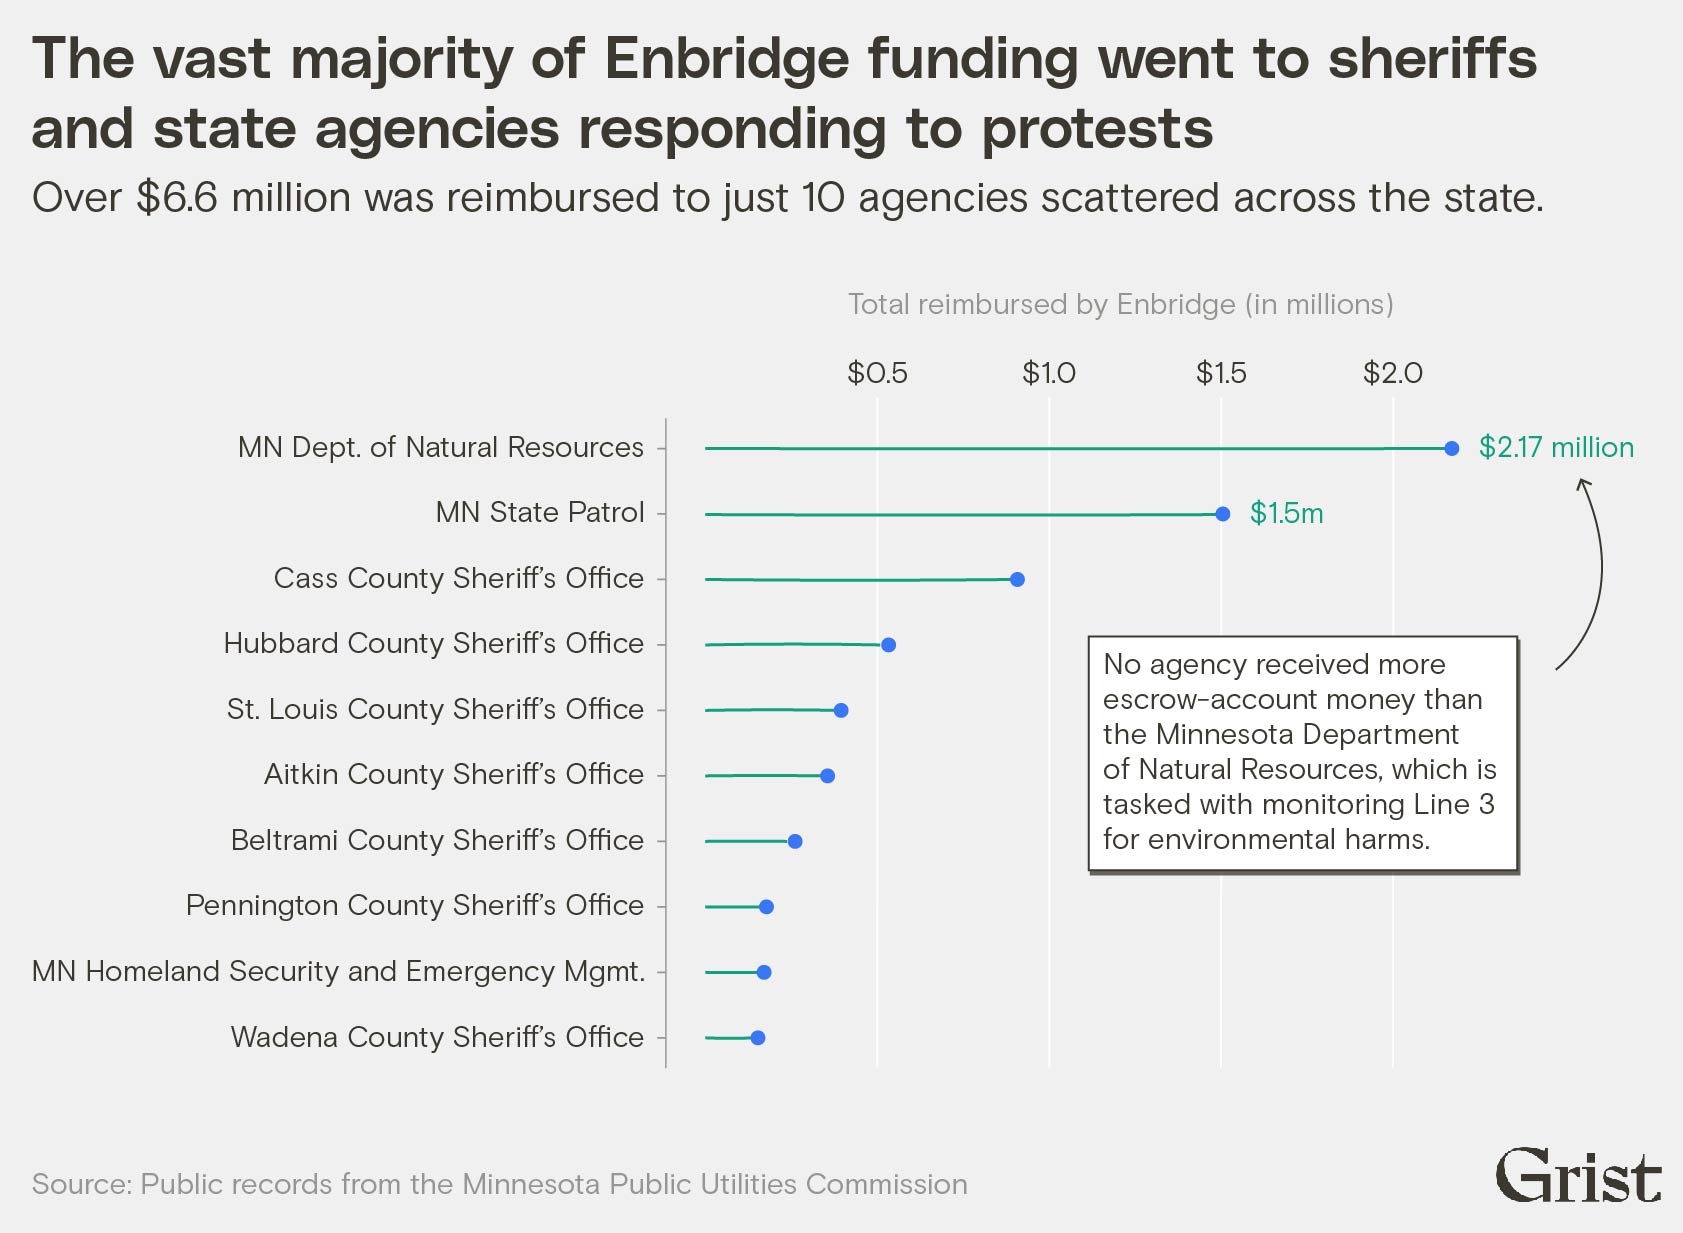 Un graphique en forme de sucette montre les principales agences qui reçoivent des remboursements d'Enbridge. Le ministère des Ressources naturelles du Minnesota a été le principal bénéficiaire avec plus de 2 millions de dollars.